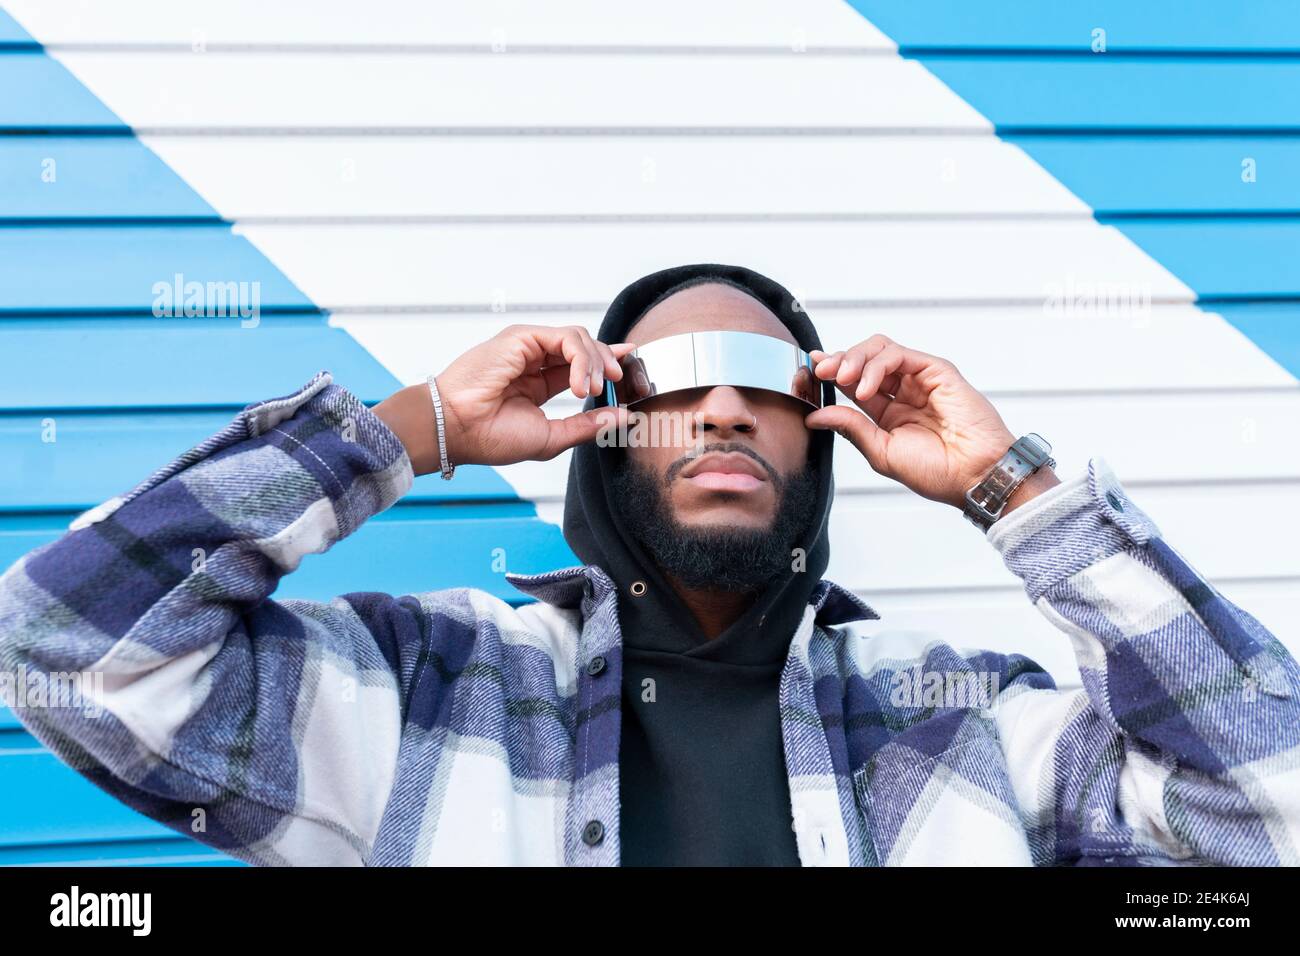 Jeune homme rappeur avec les bras relevés portant des lunettes de soleil  contre la tôle ondulée fer à repasser Photo Stock - Alamy